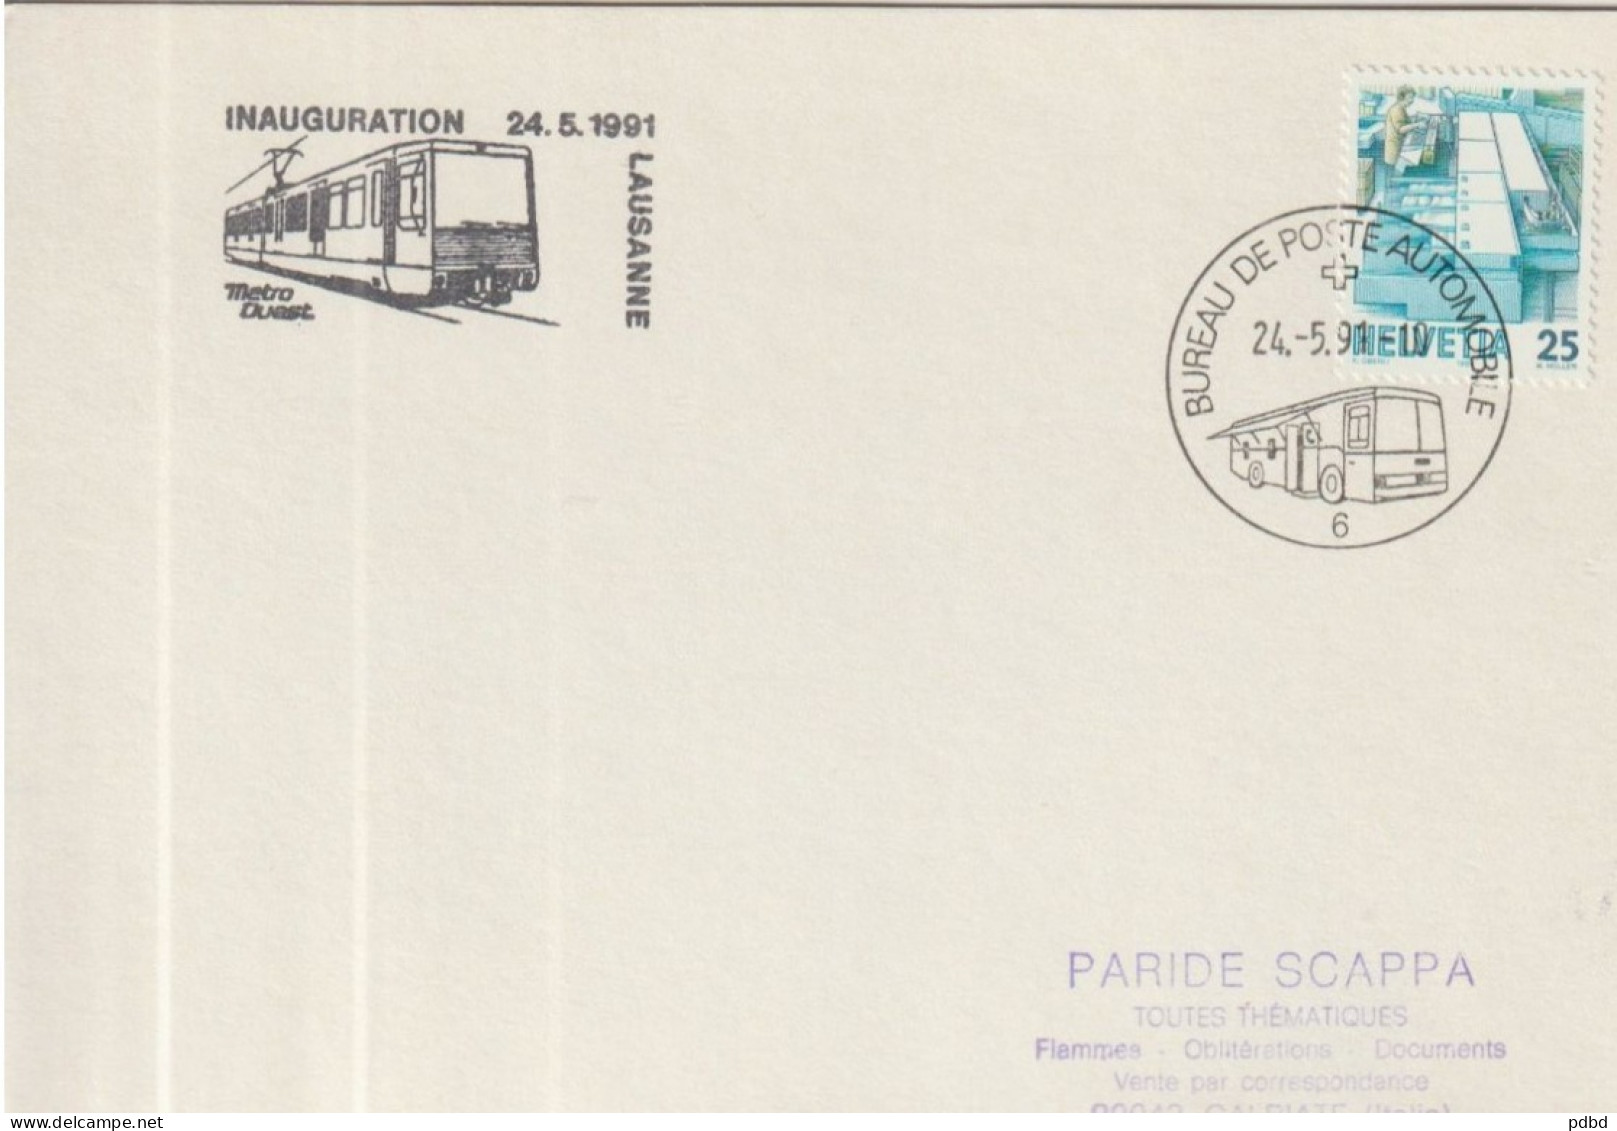 ETR FER 07 . Carton Format Enveloppe  . Suisse . Bureau De Poste Automobile 6 . Cachet Inauguration Métro 1991 .Lausanne - Railway